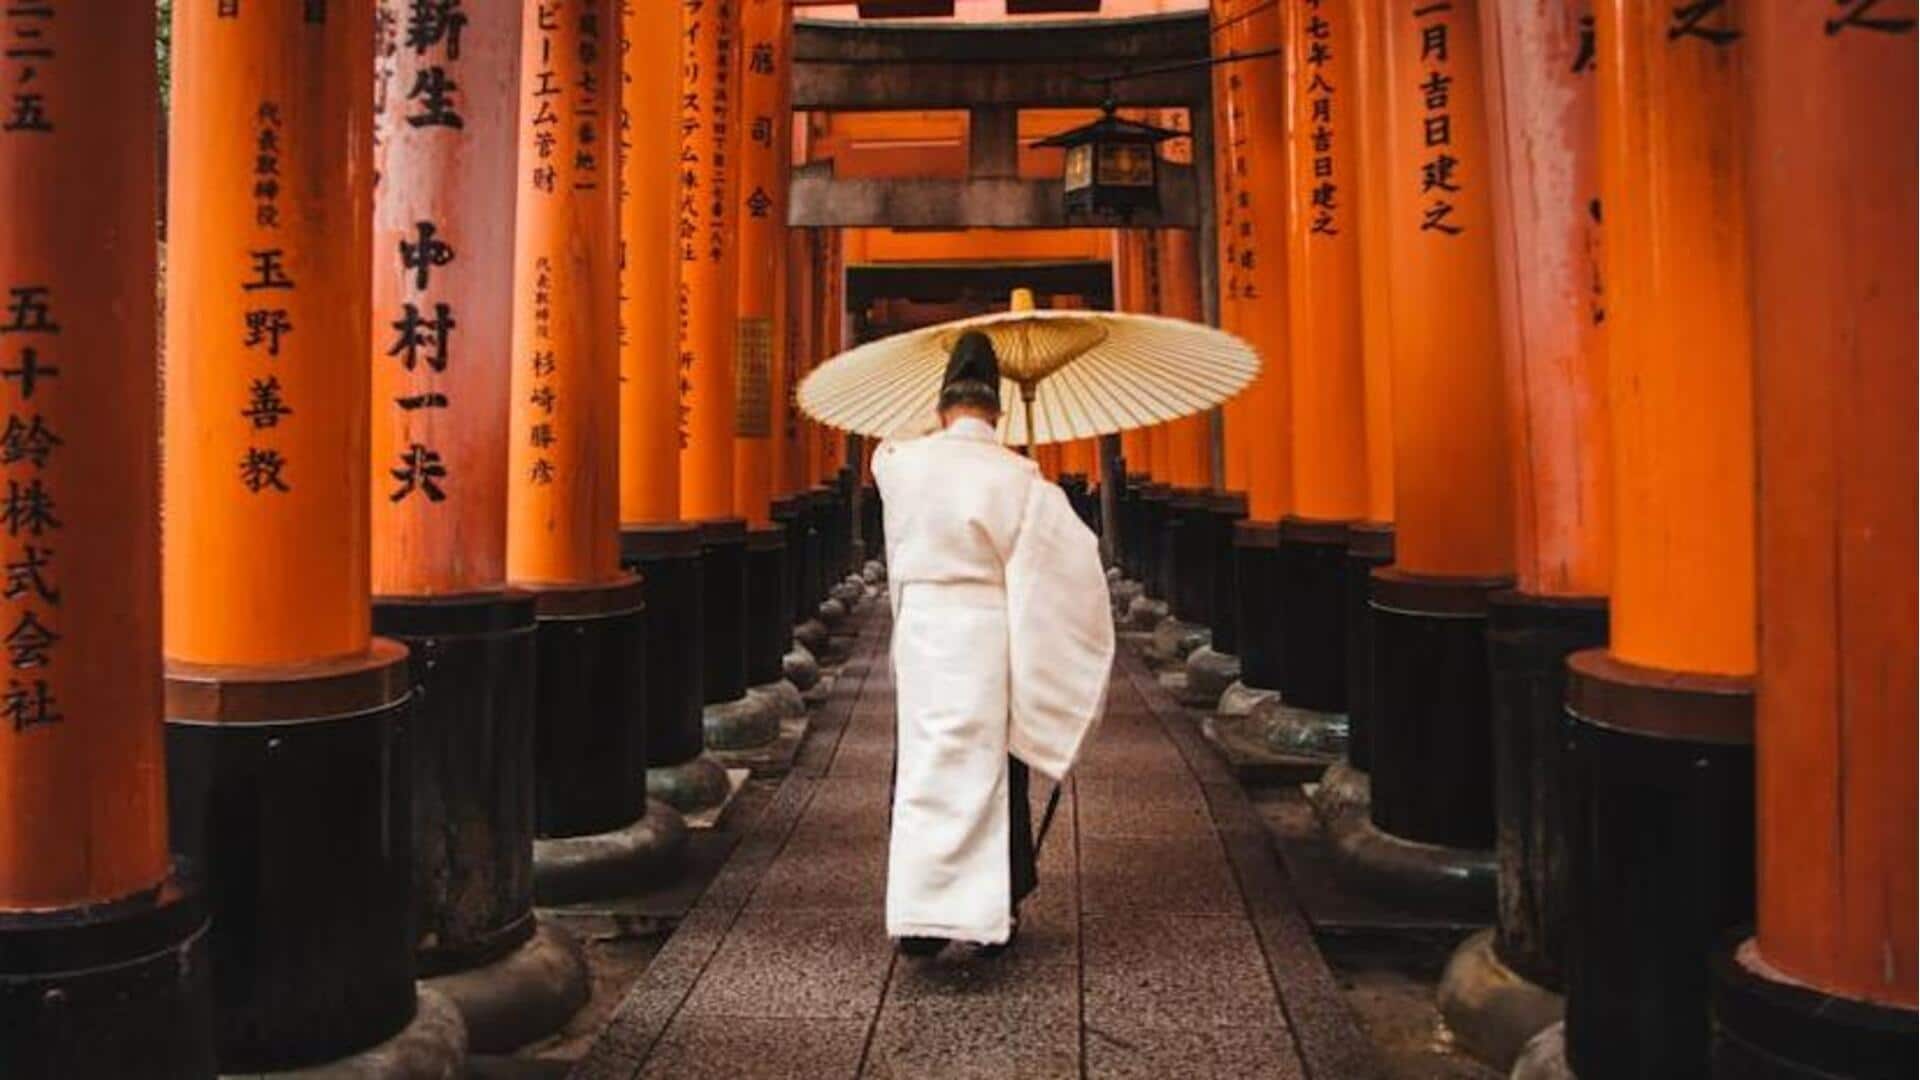 Menjelajahi tempat paling tenang di Jepang untuk mendapatkan pengalaman spiritual